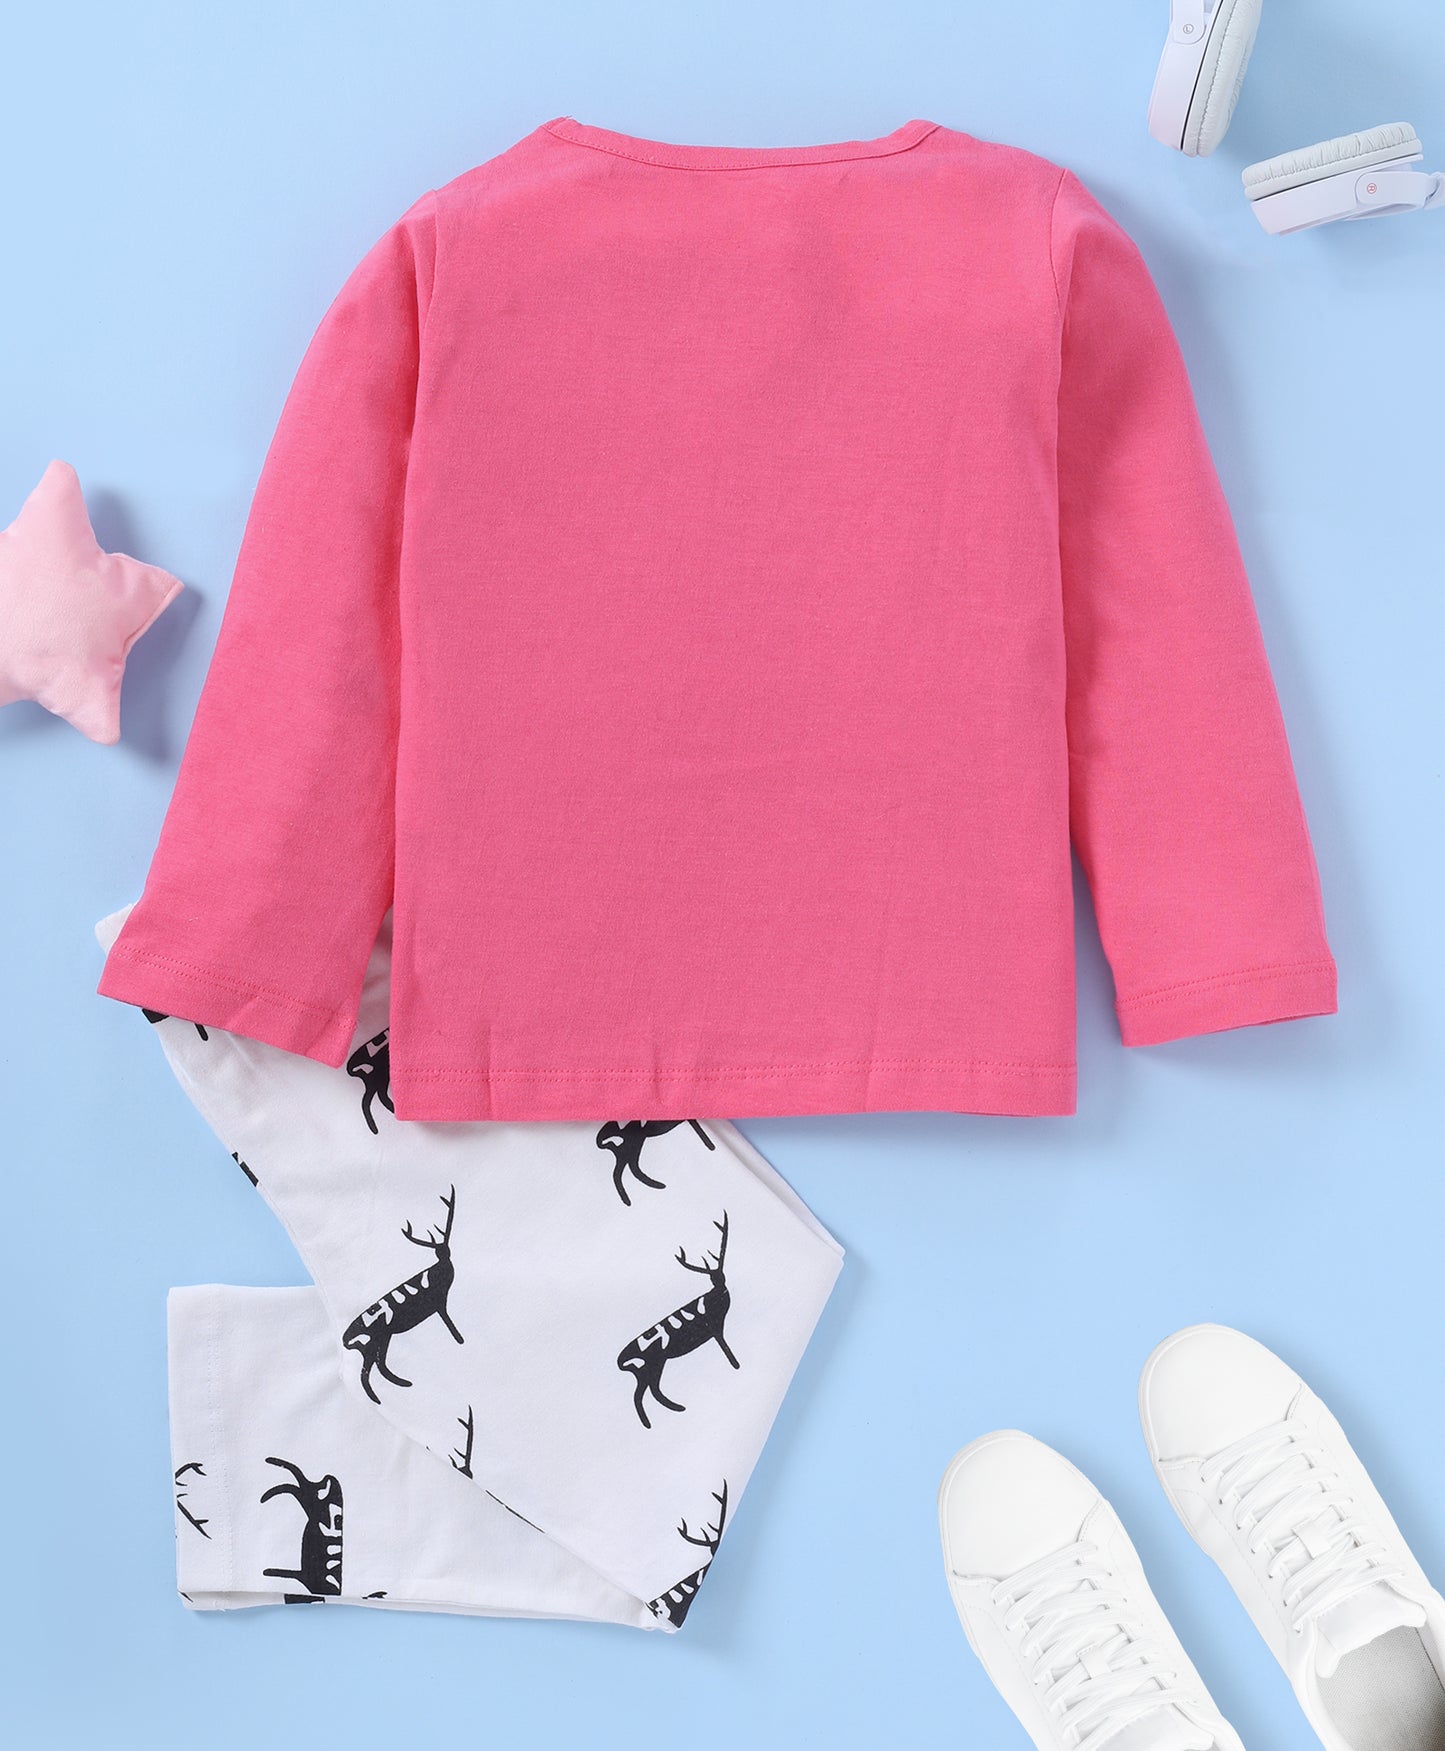 Pink & White Reindeer Printed Loungewear for Girls